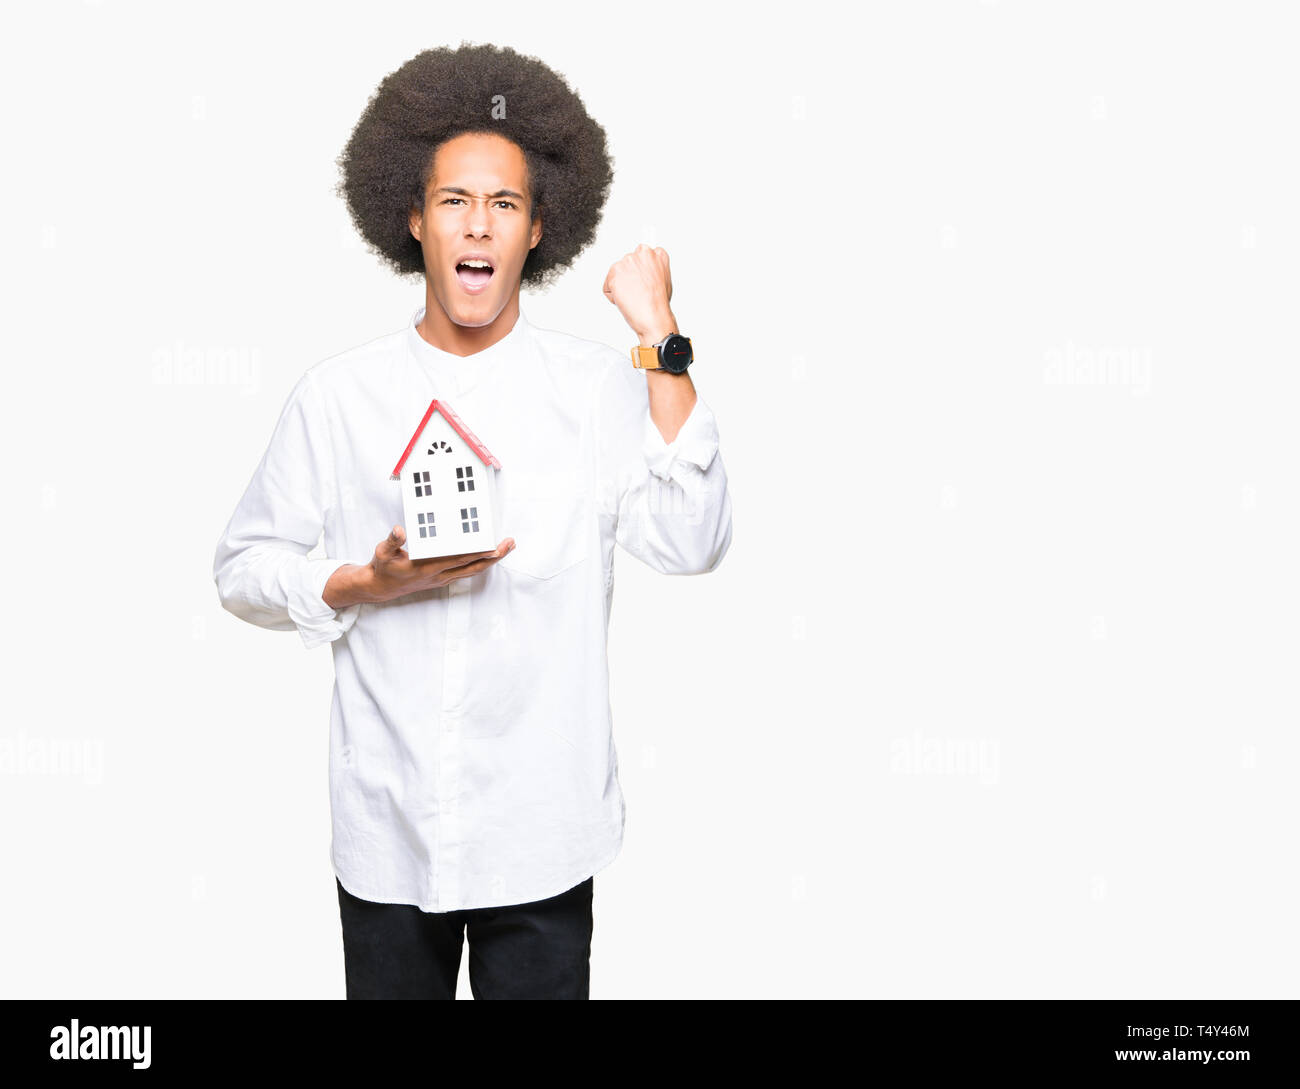 Junge afrikanische amerikanische Mann mit afro Haar holding Haus genervt und frustriert schrie mit Zorn, verrückt und schreien mit erhobener Hand, Wut Konzept Stockfoto